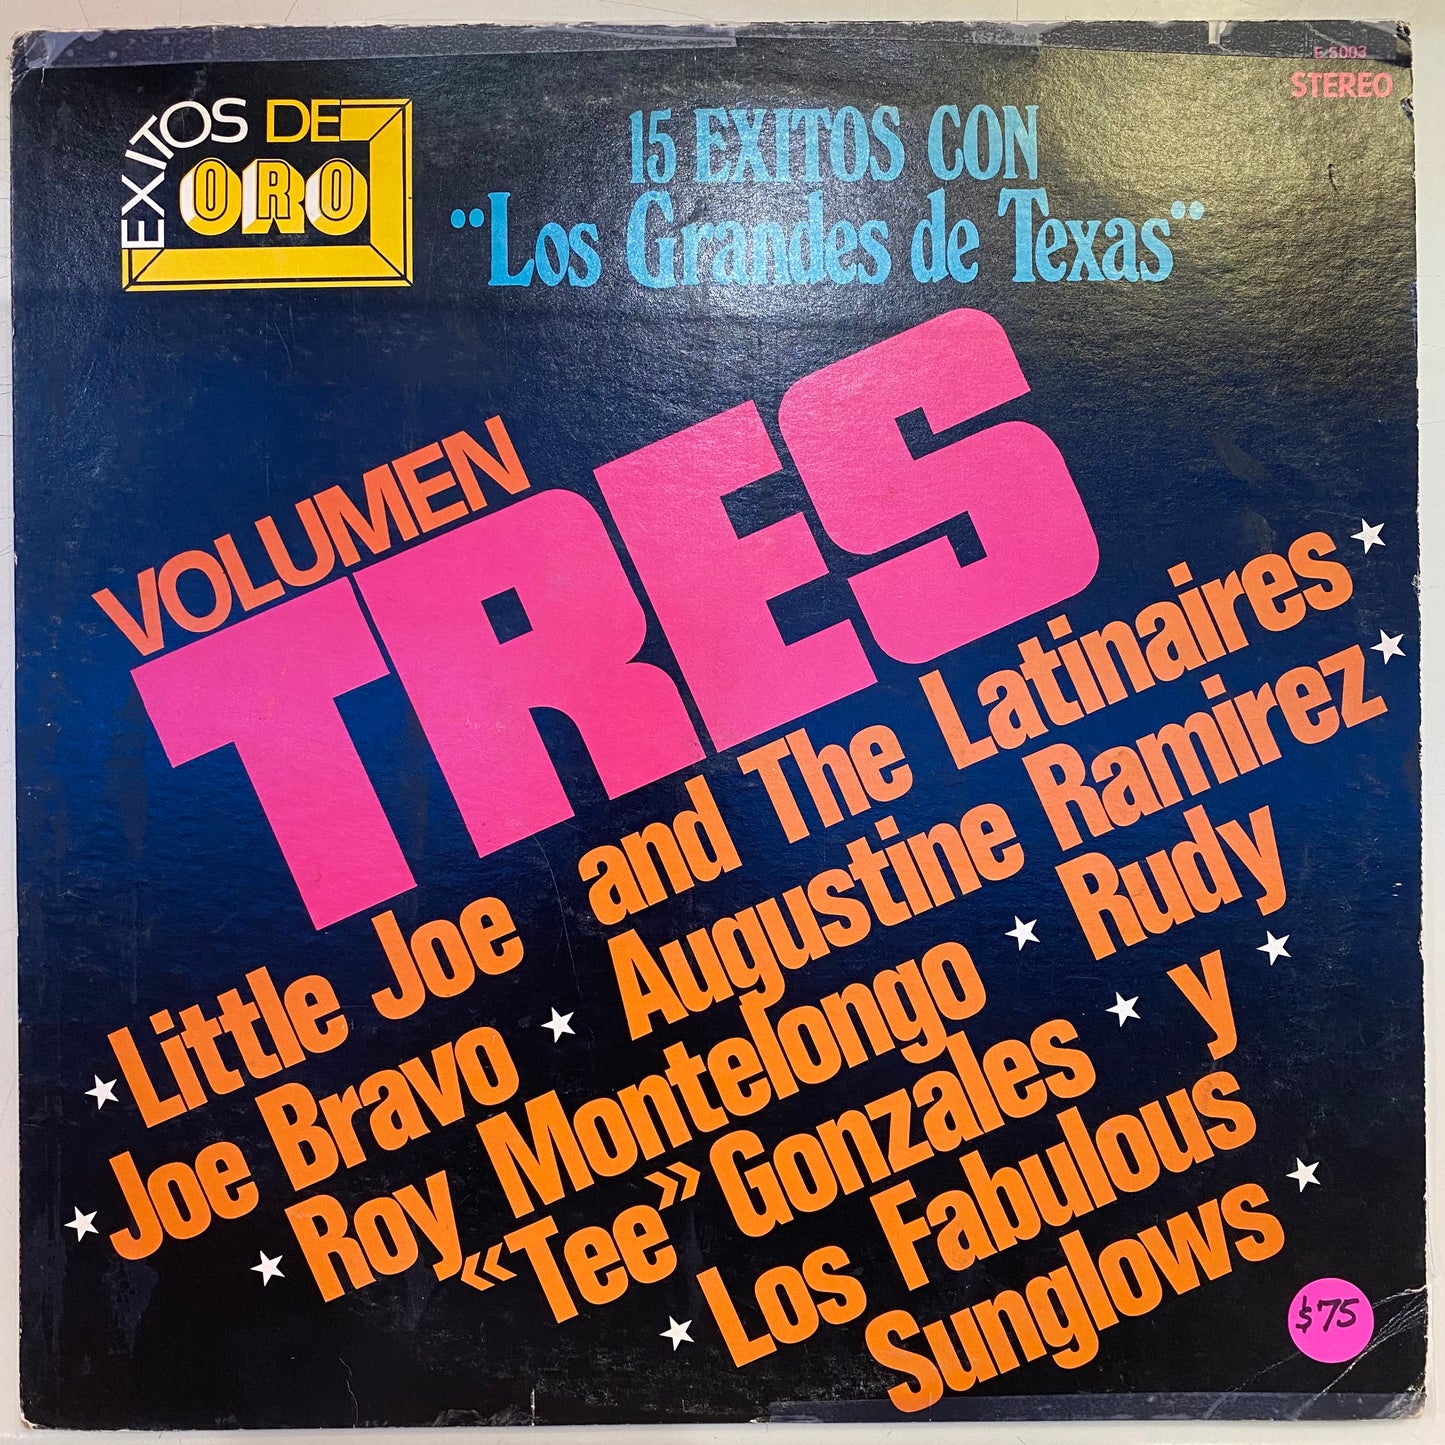 15 Exitos Con Los Grandes De Texas Vol. 3 - Various Artists (Open Vinyl)